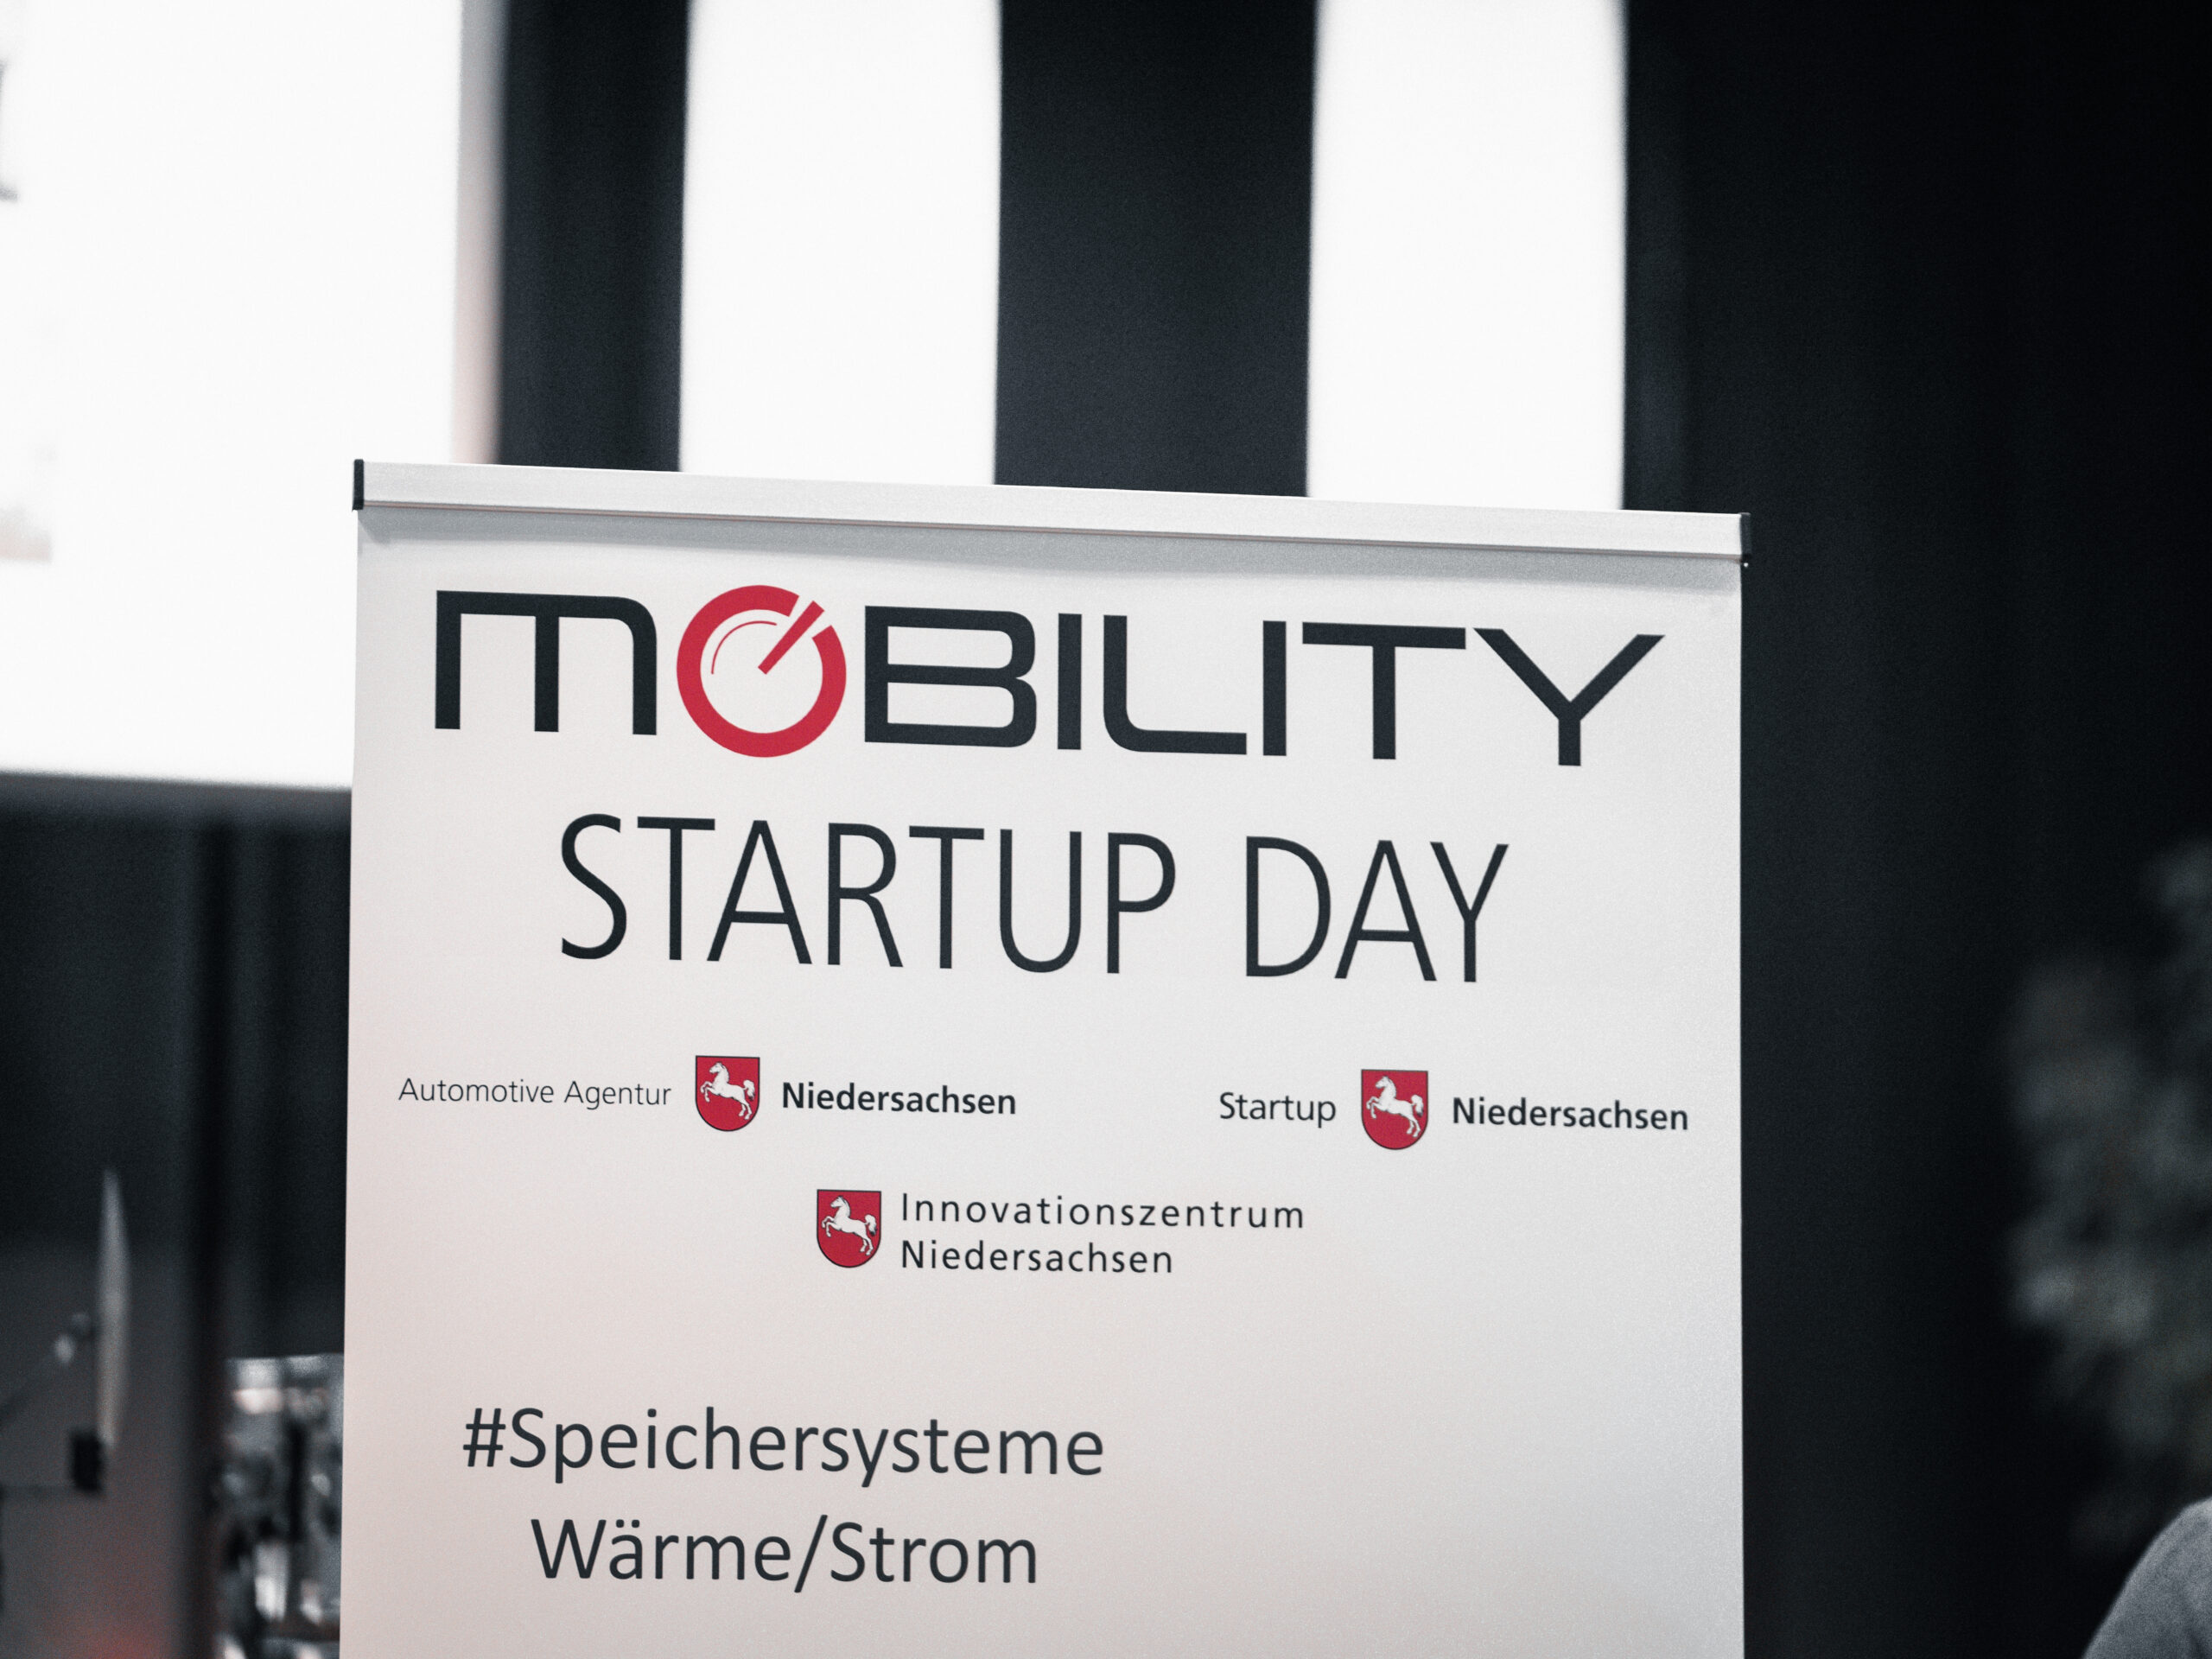 Bild vom Mobility Startup Day.